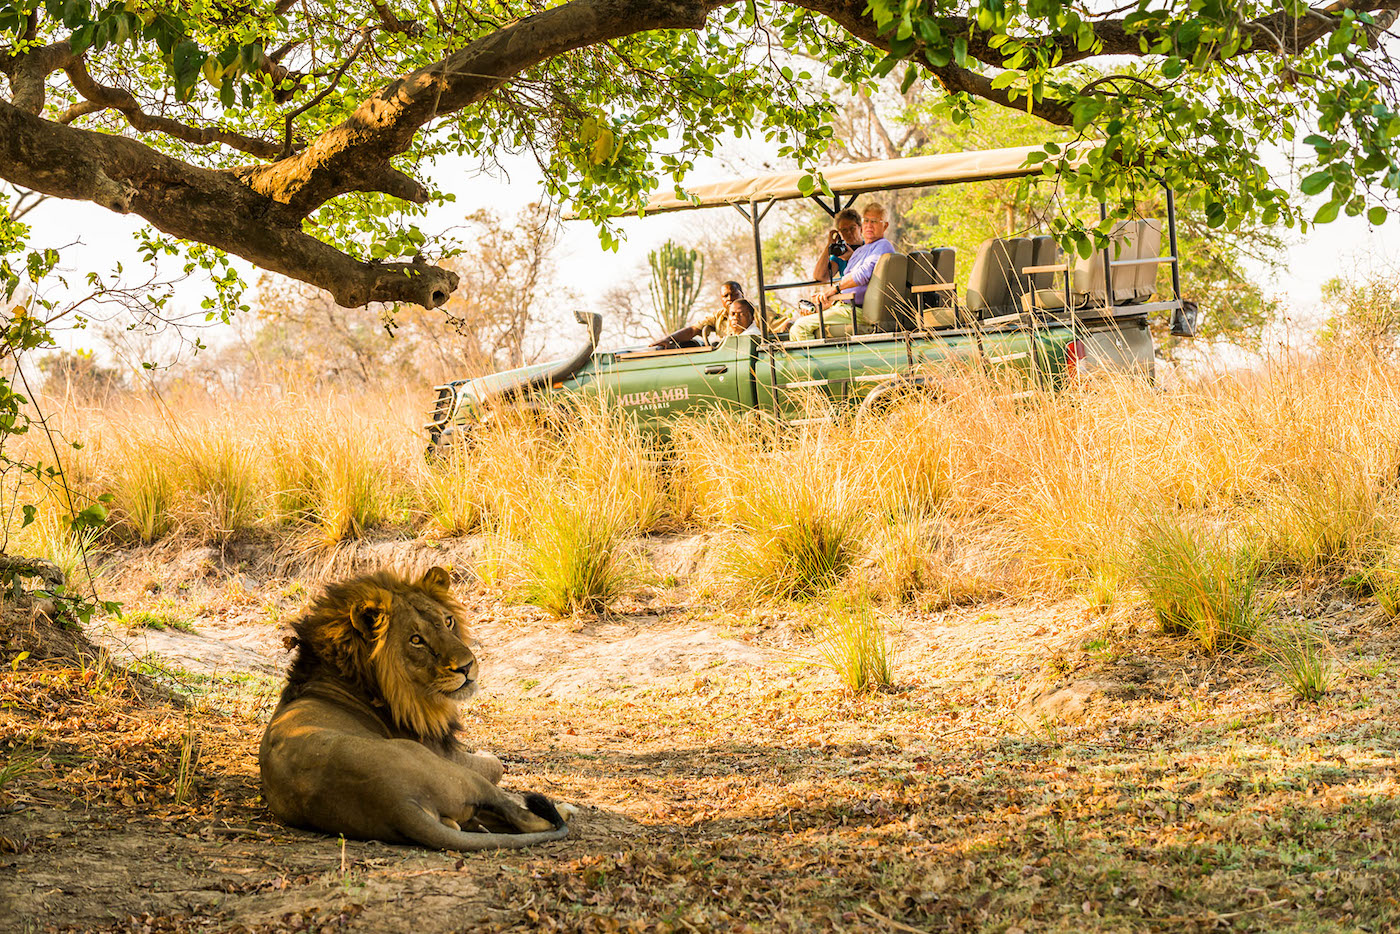 mukambi safari guides and guests looking at a lion